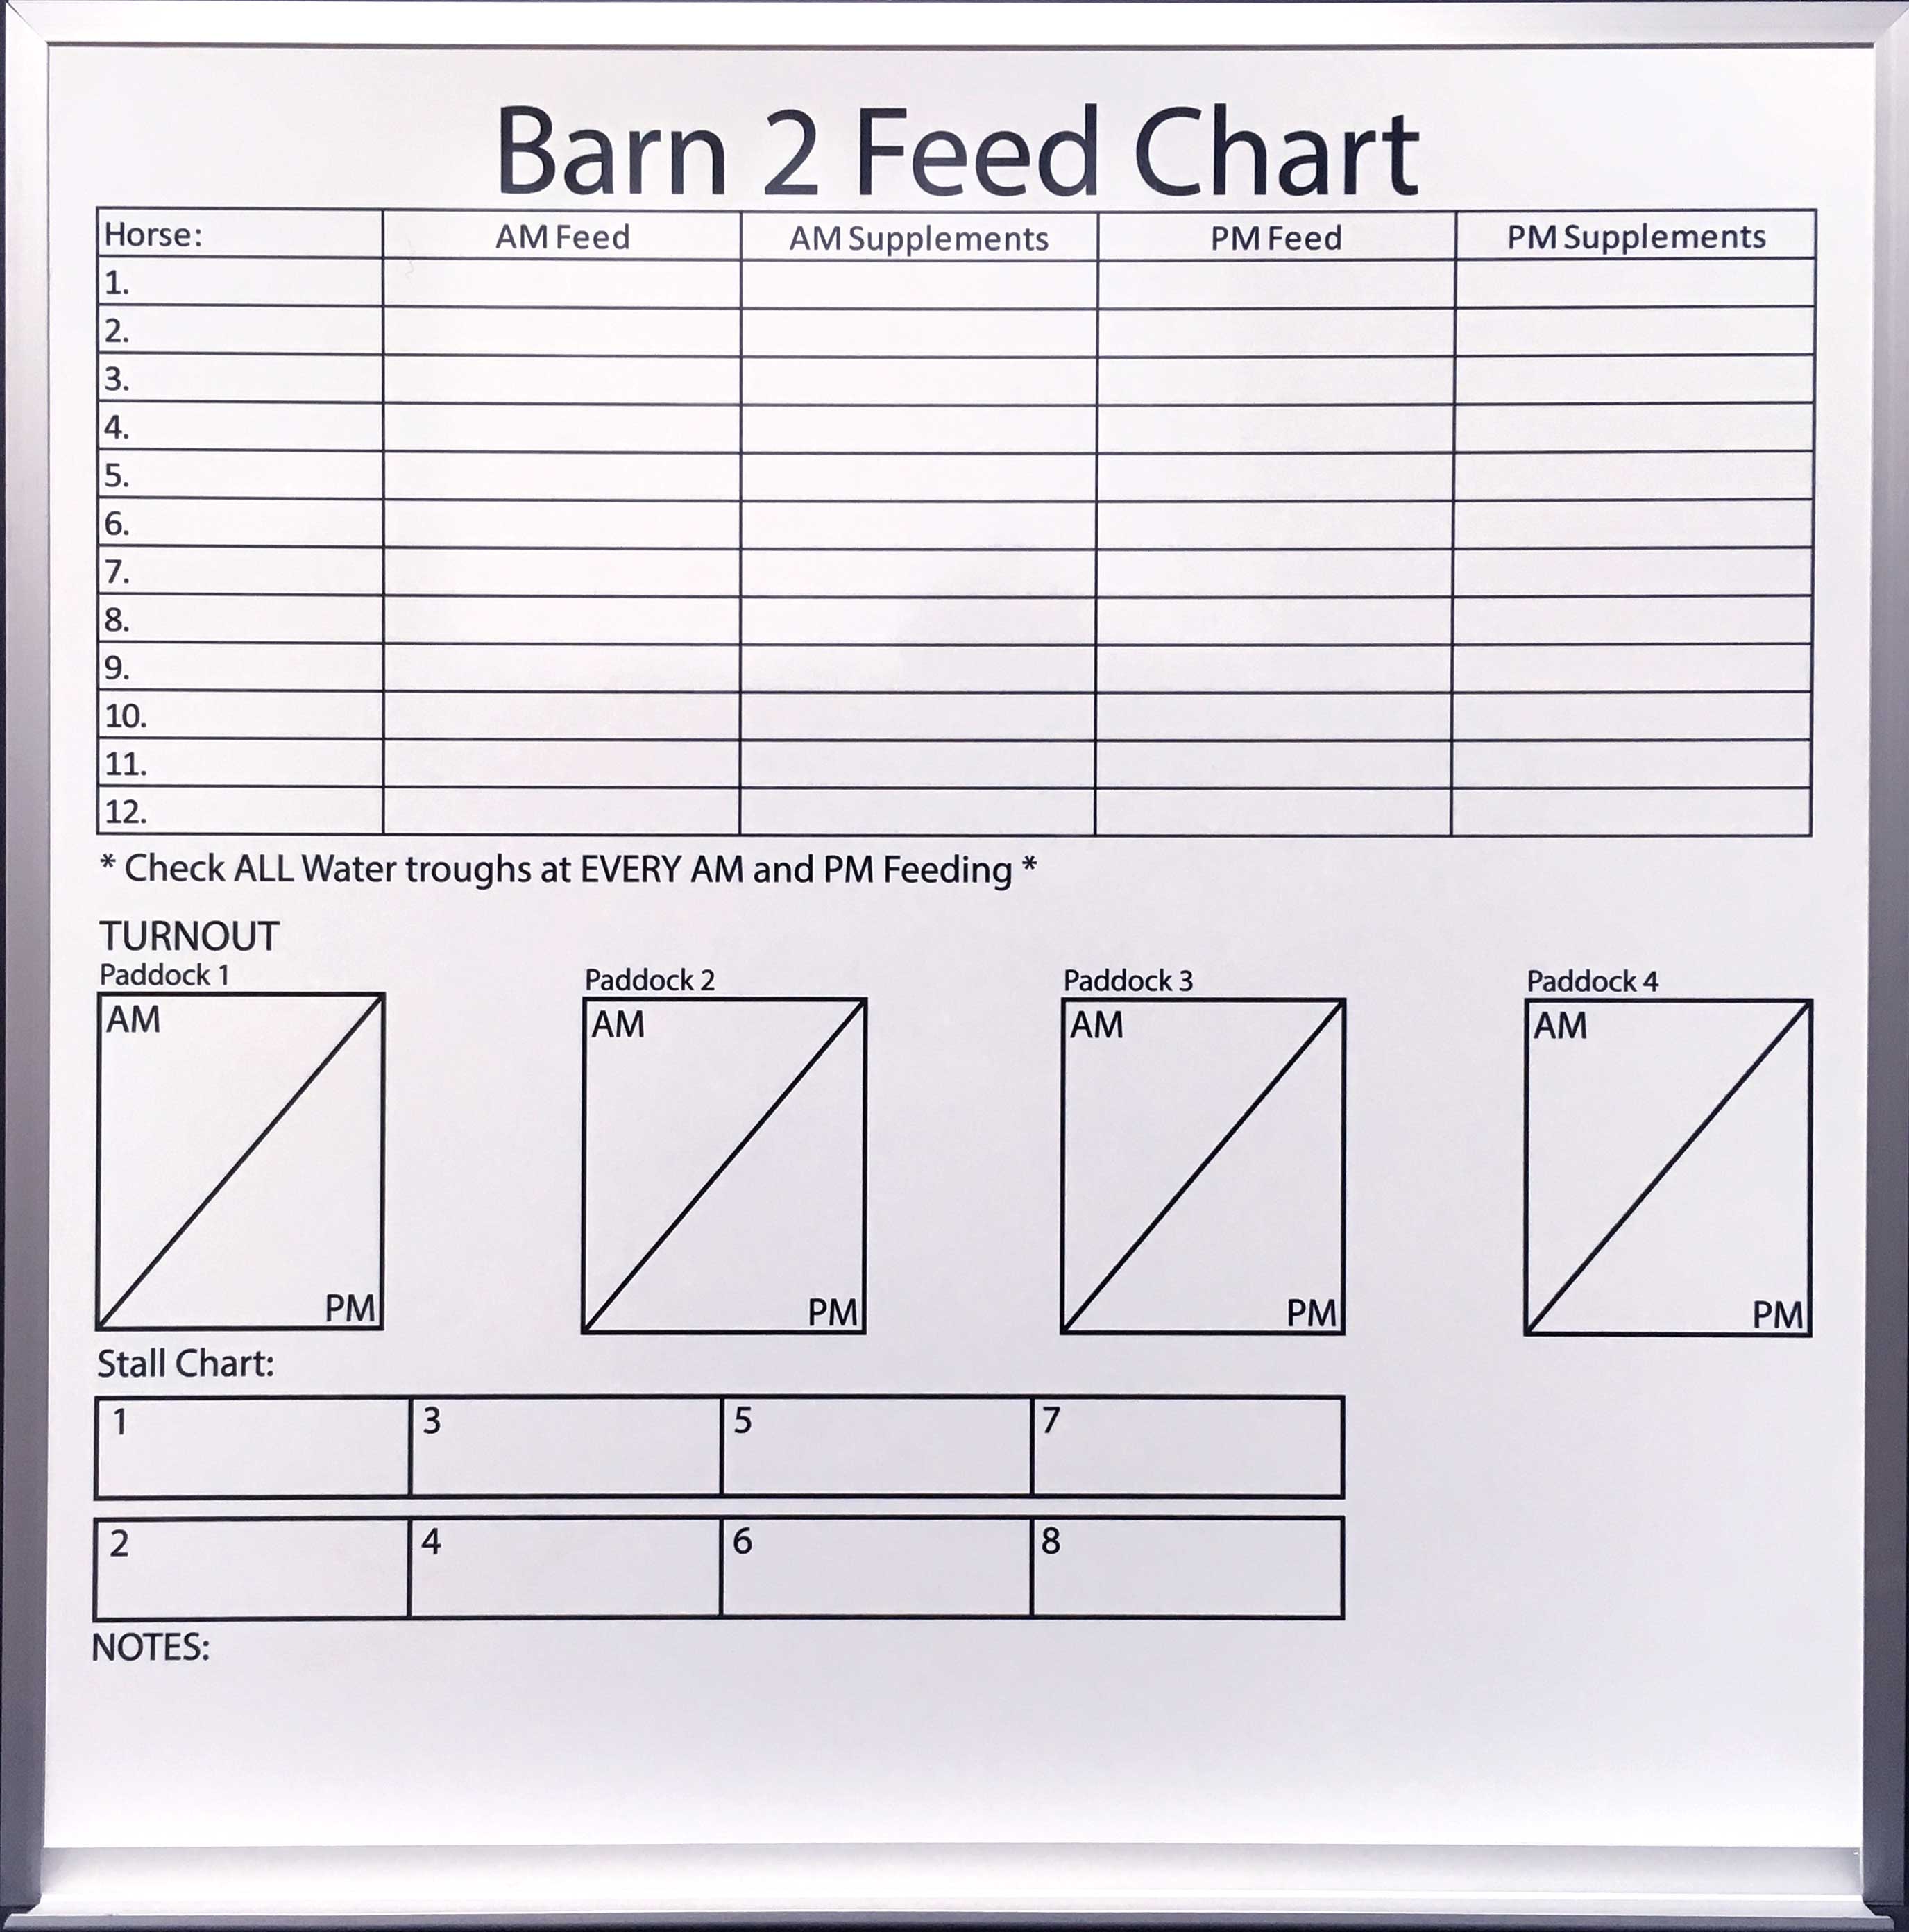 Barn Feed Chart custom printed dry erase board